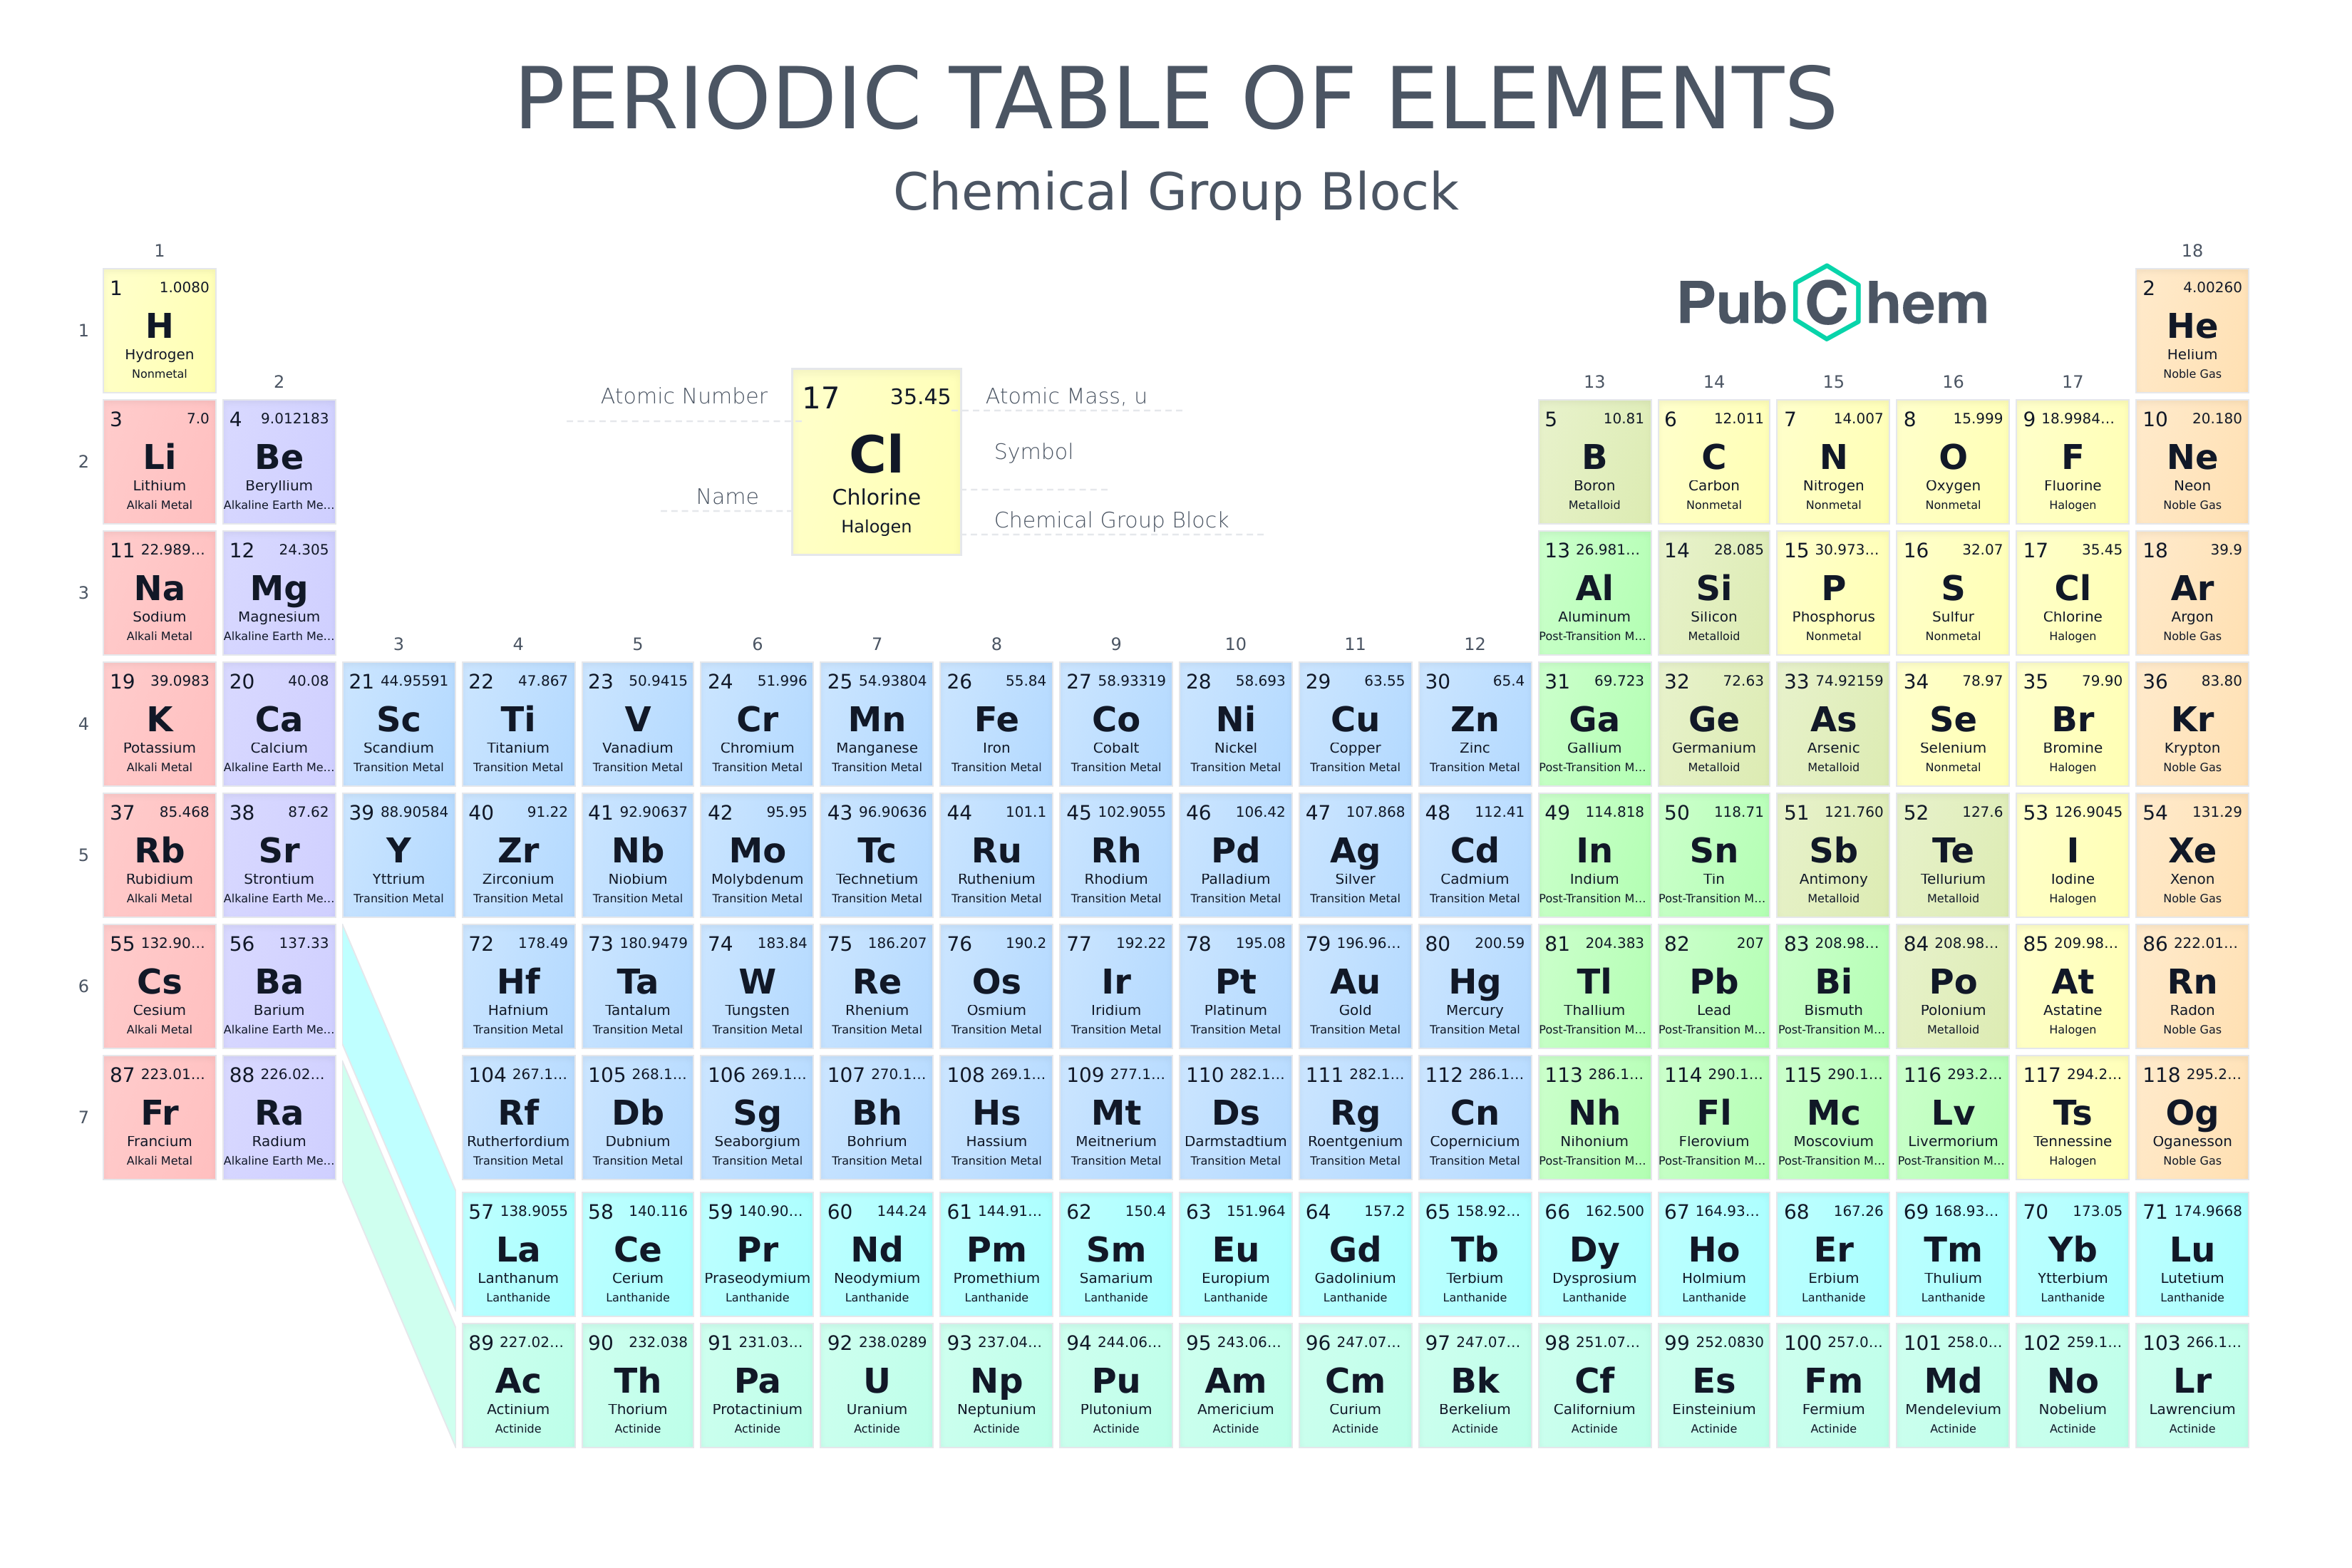 tin in the periodic table